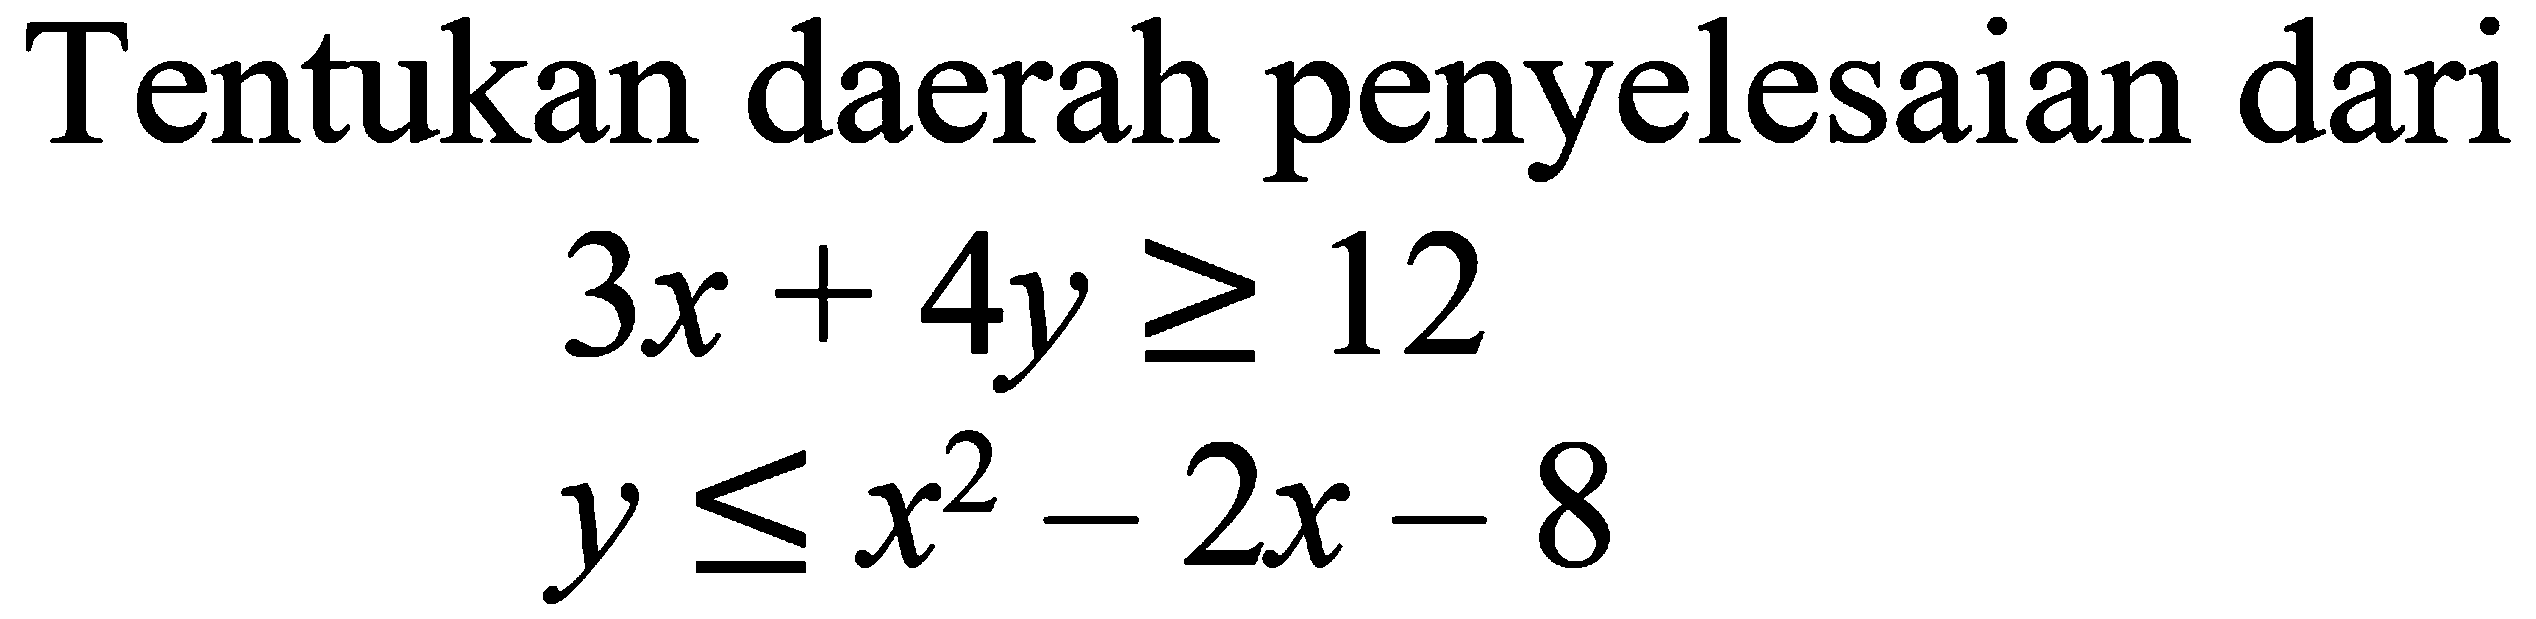 Tentukan daerah penyelesaian dari 3x+4y>=12 y<=x^2-2x-8